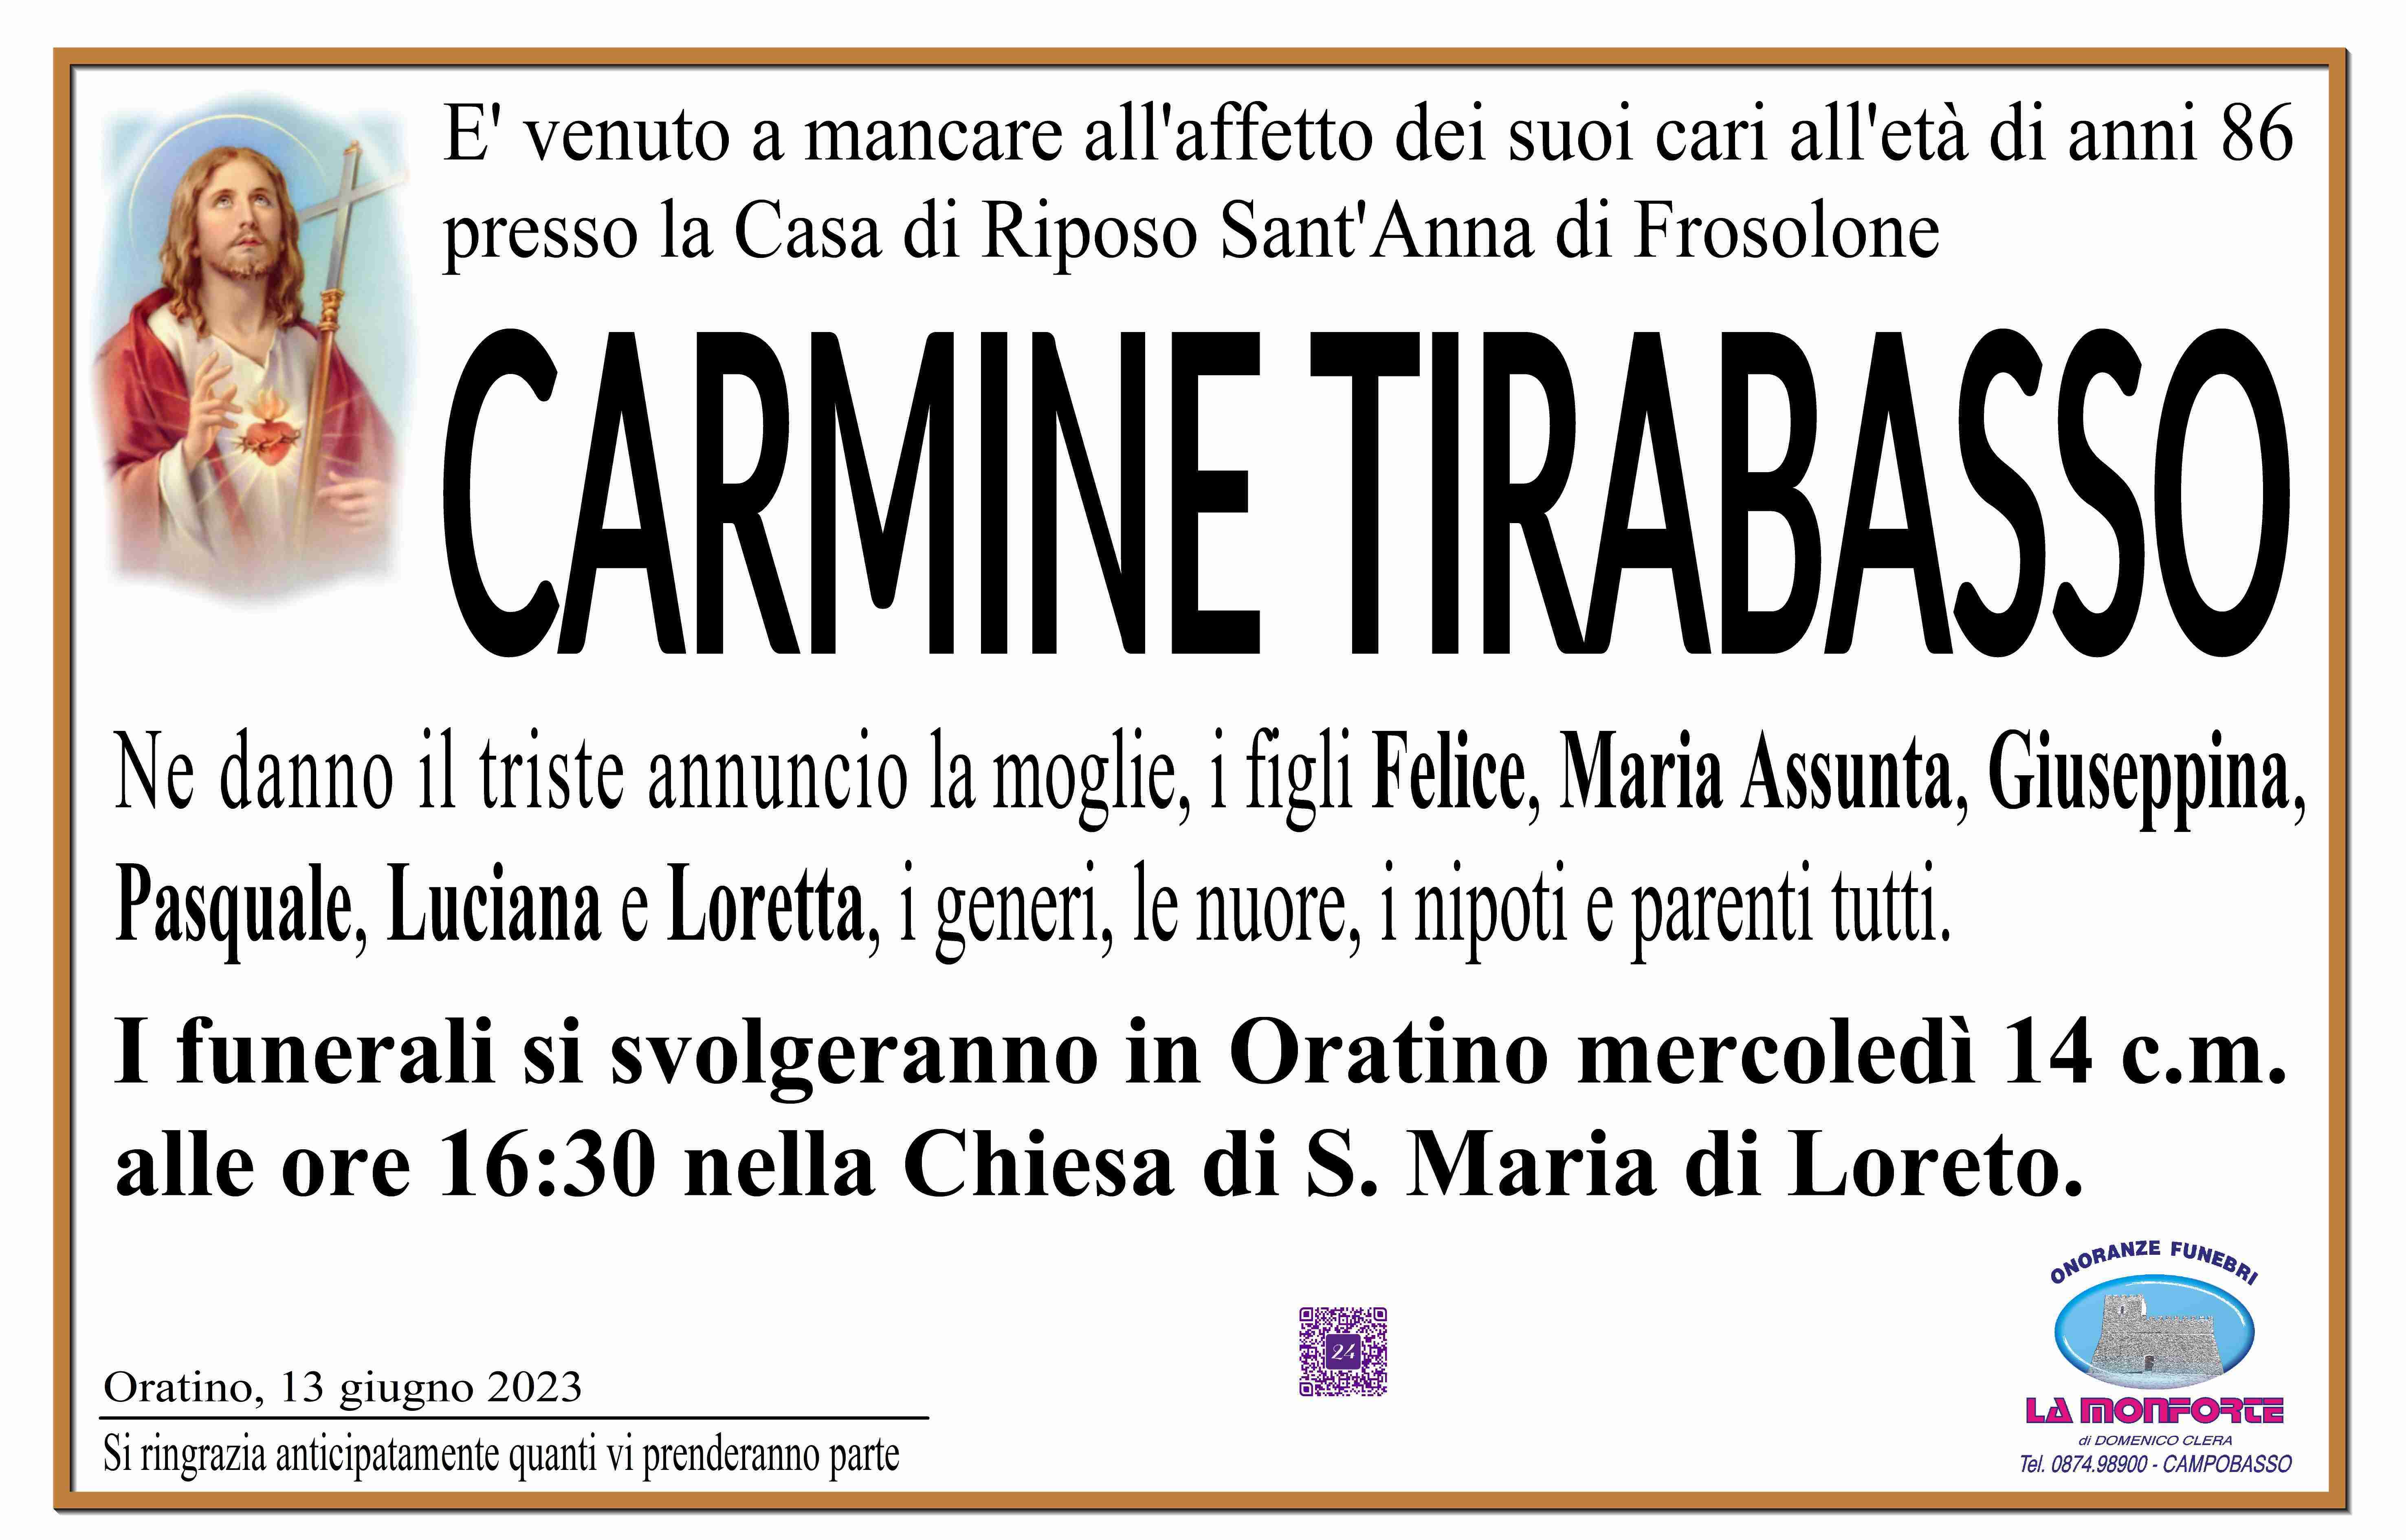 Carmine Tirabasso